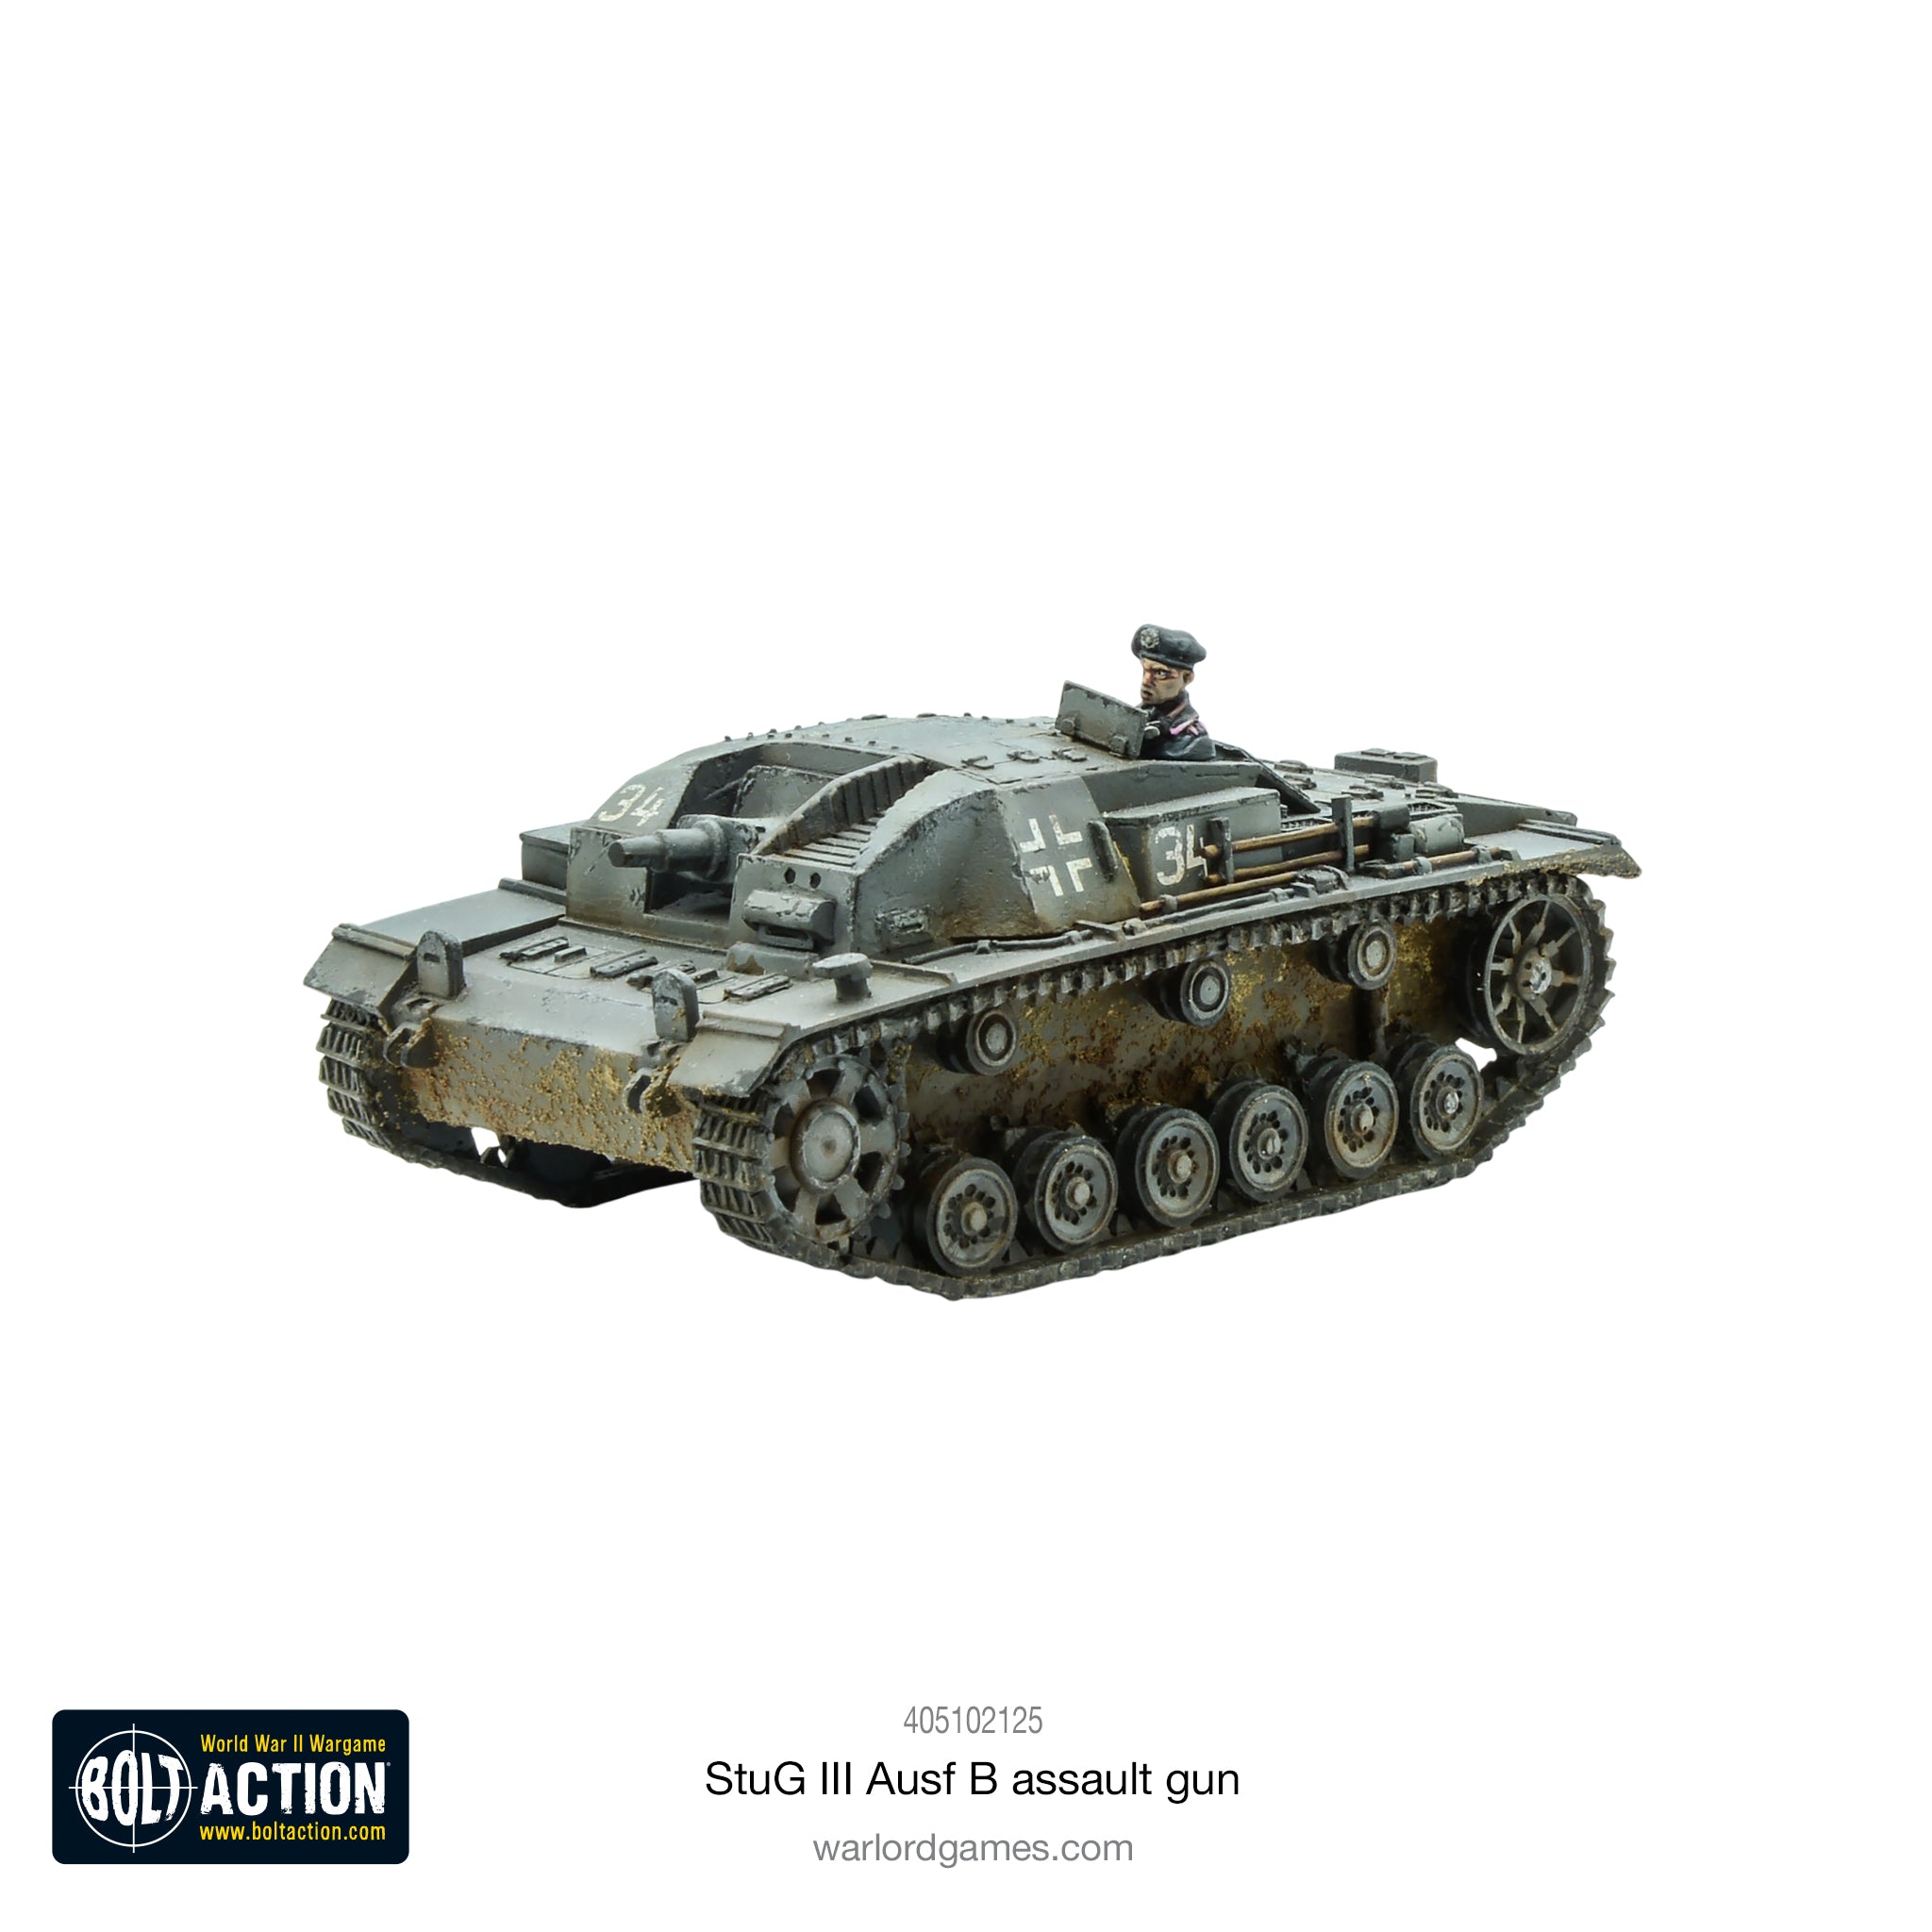 StuG III Ausf B assault gun